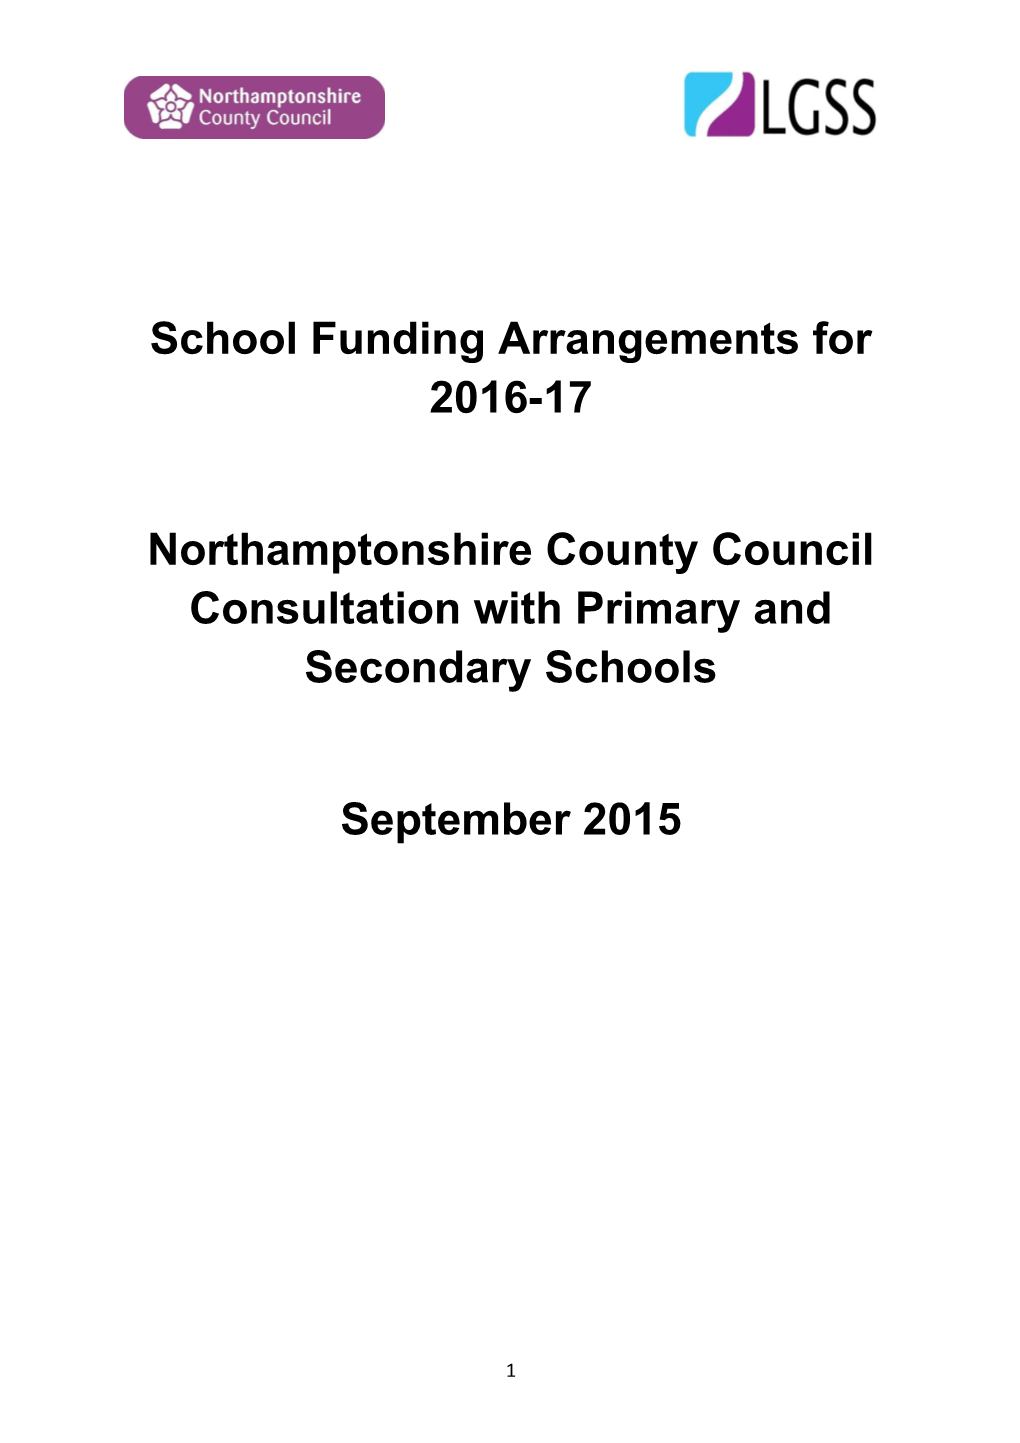 School Funding Arrangements for 2016-17